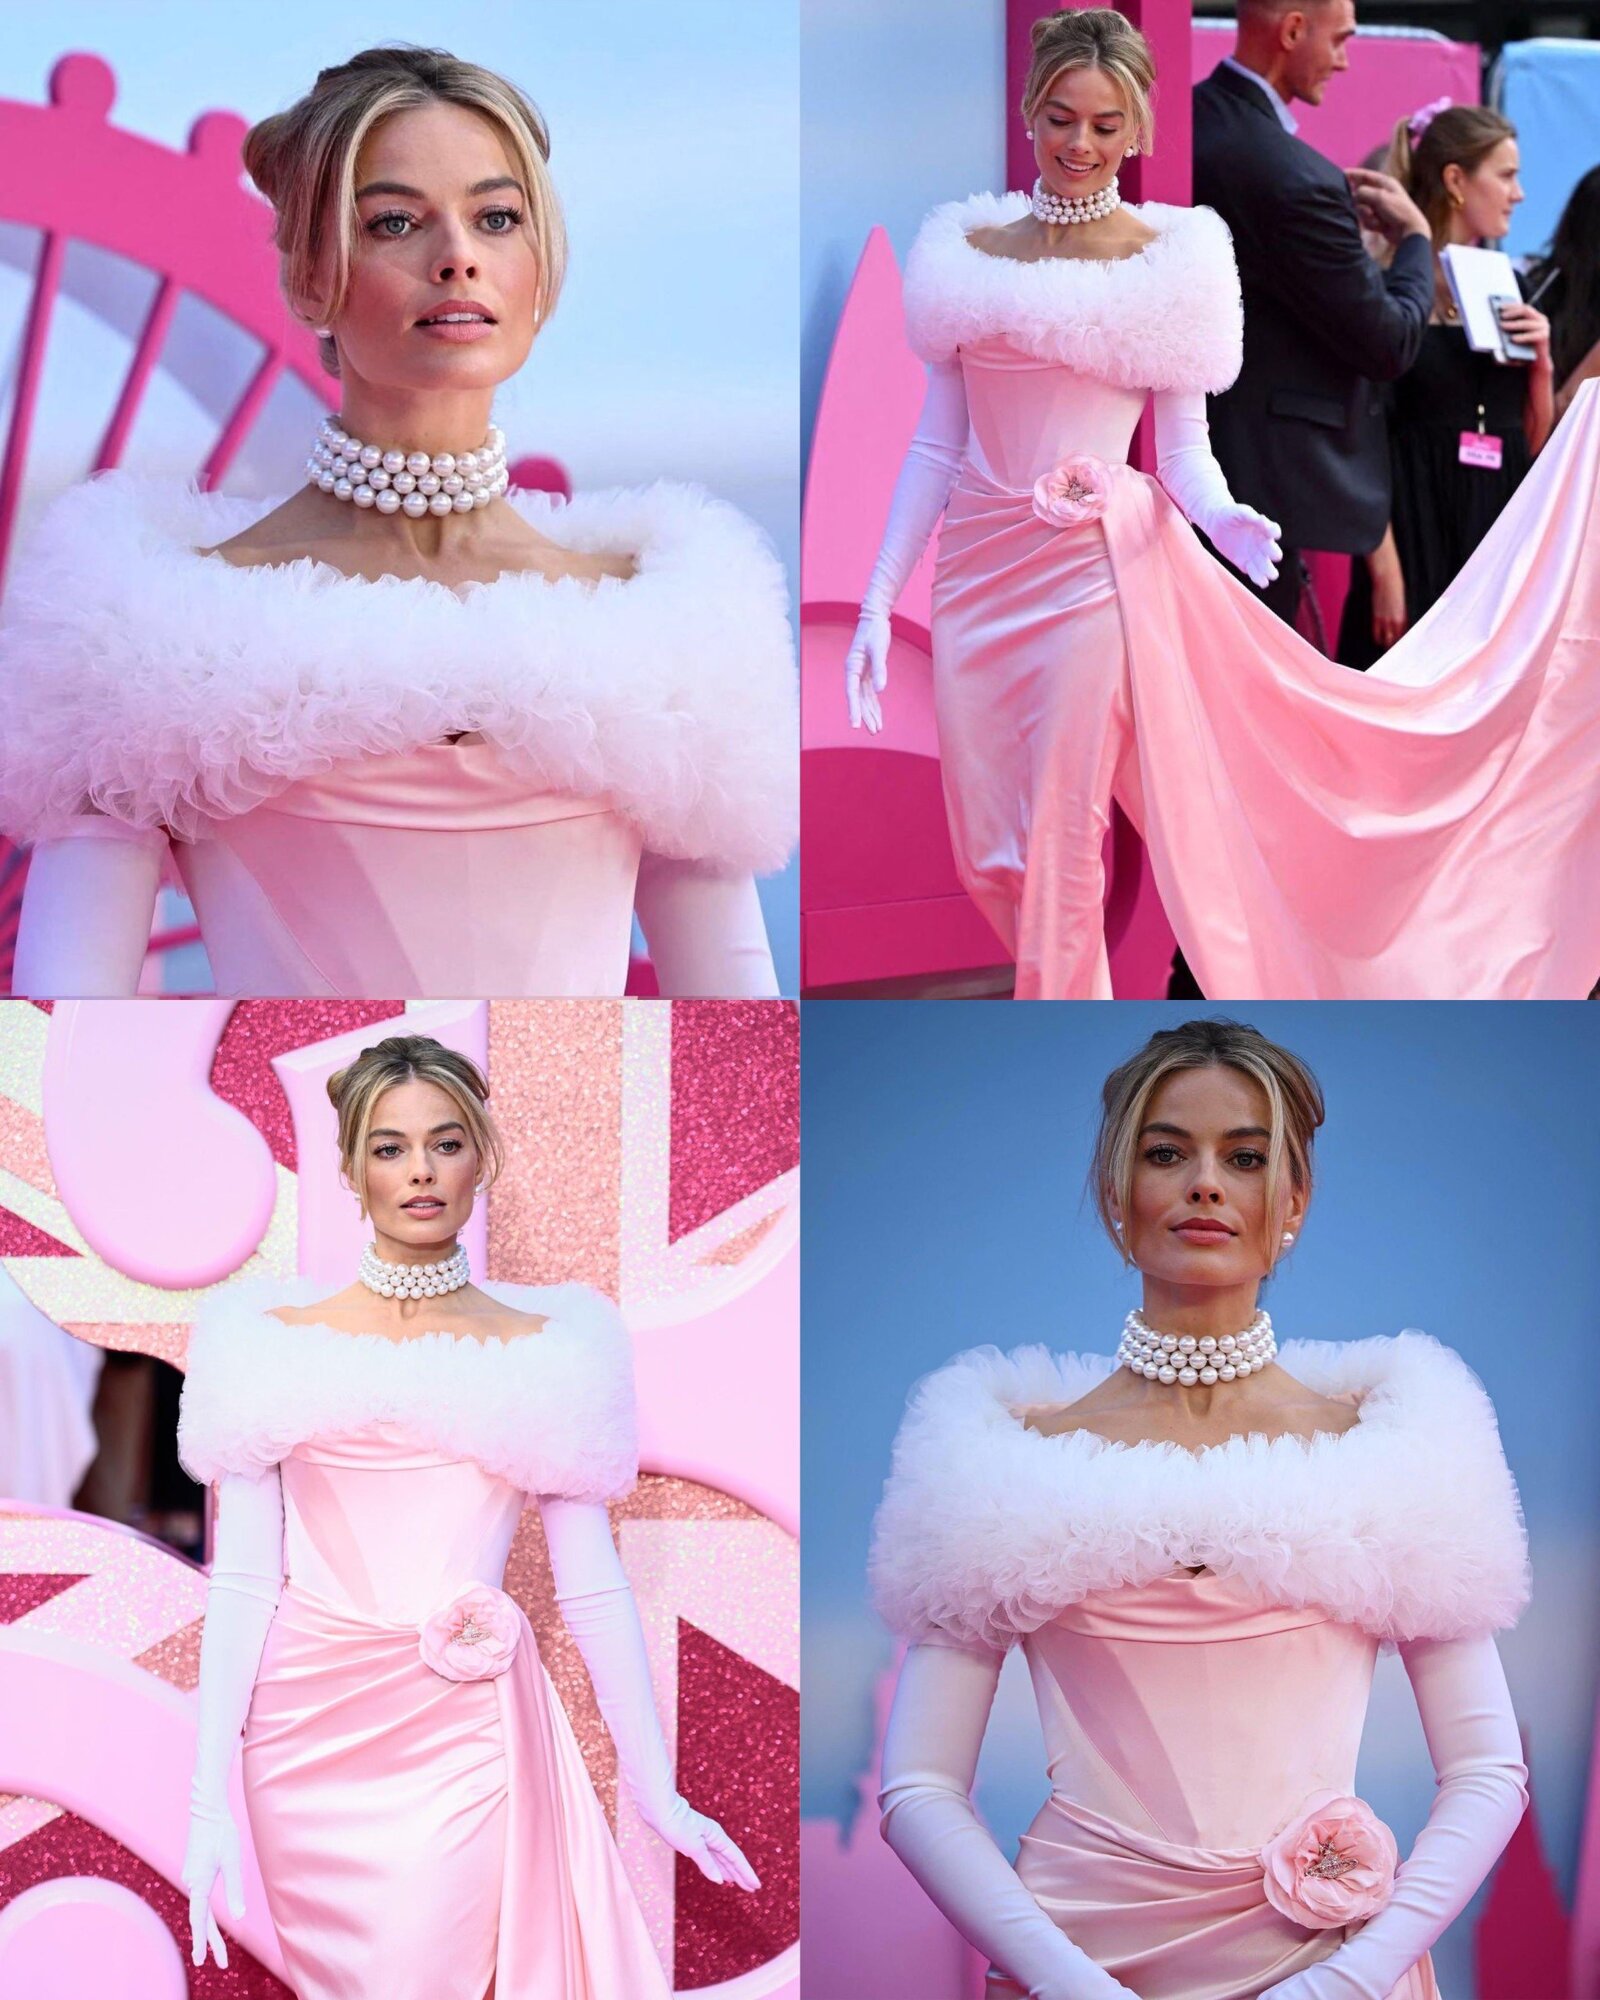 Margot Robbie a Barbie című film sztárja hihetetlenül kreatív szettekkel elevenítette meg az ikonikus babát a pink szőnyegen.